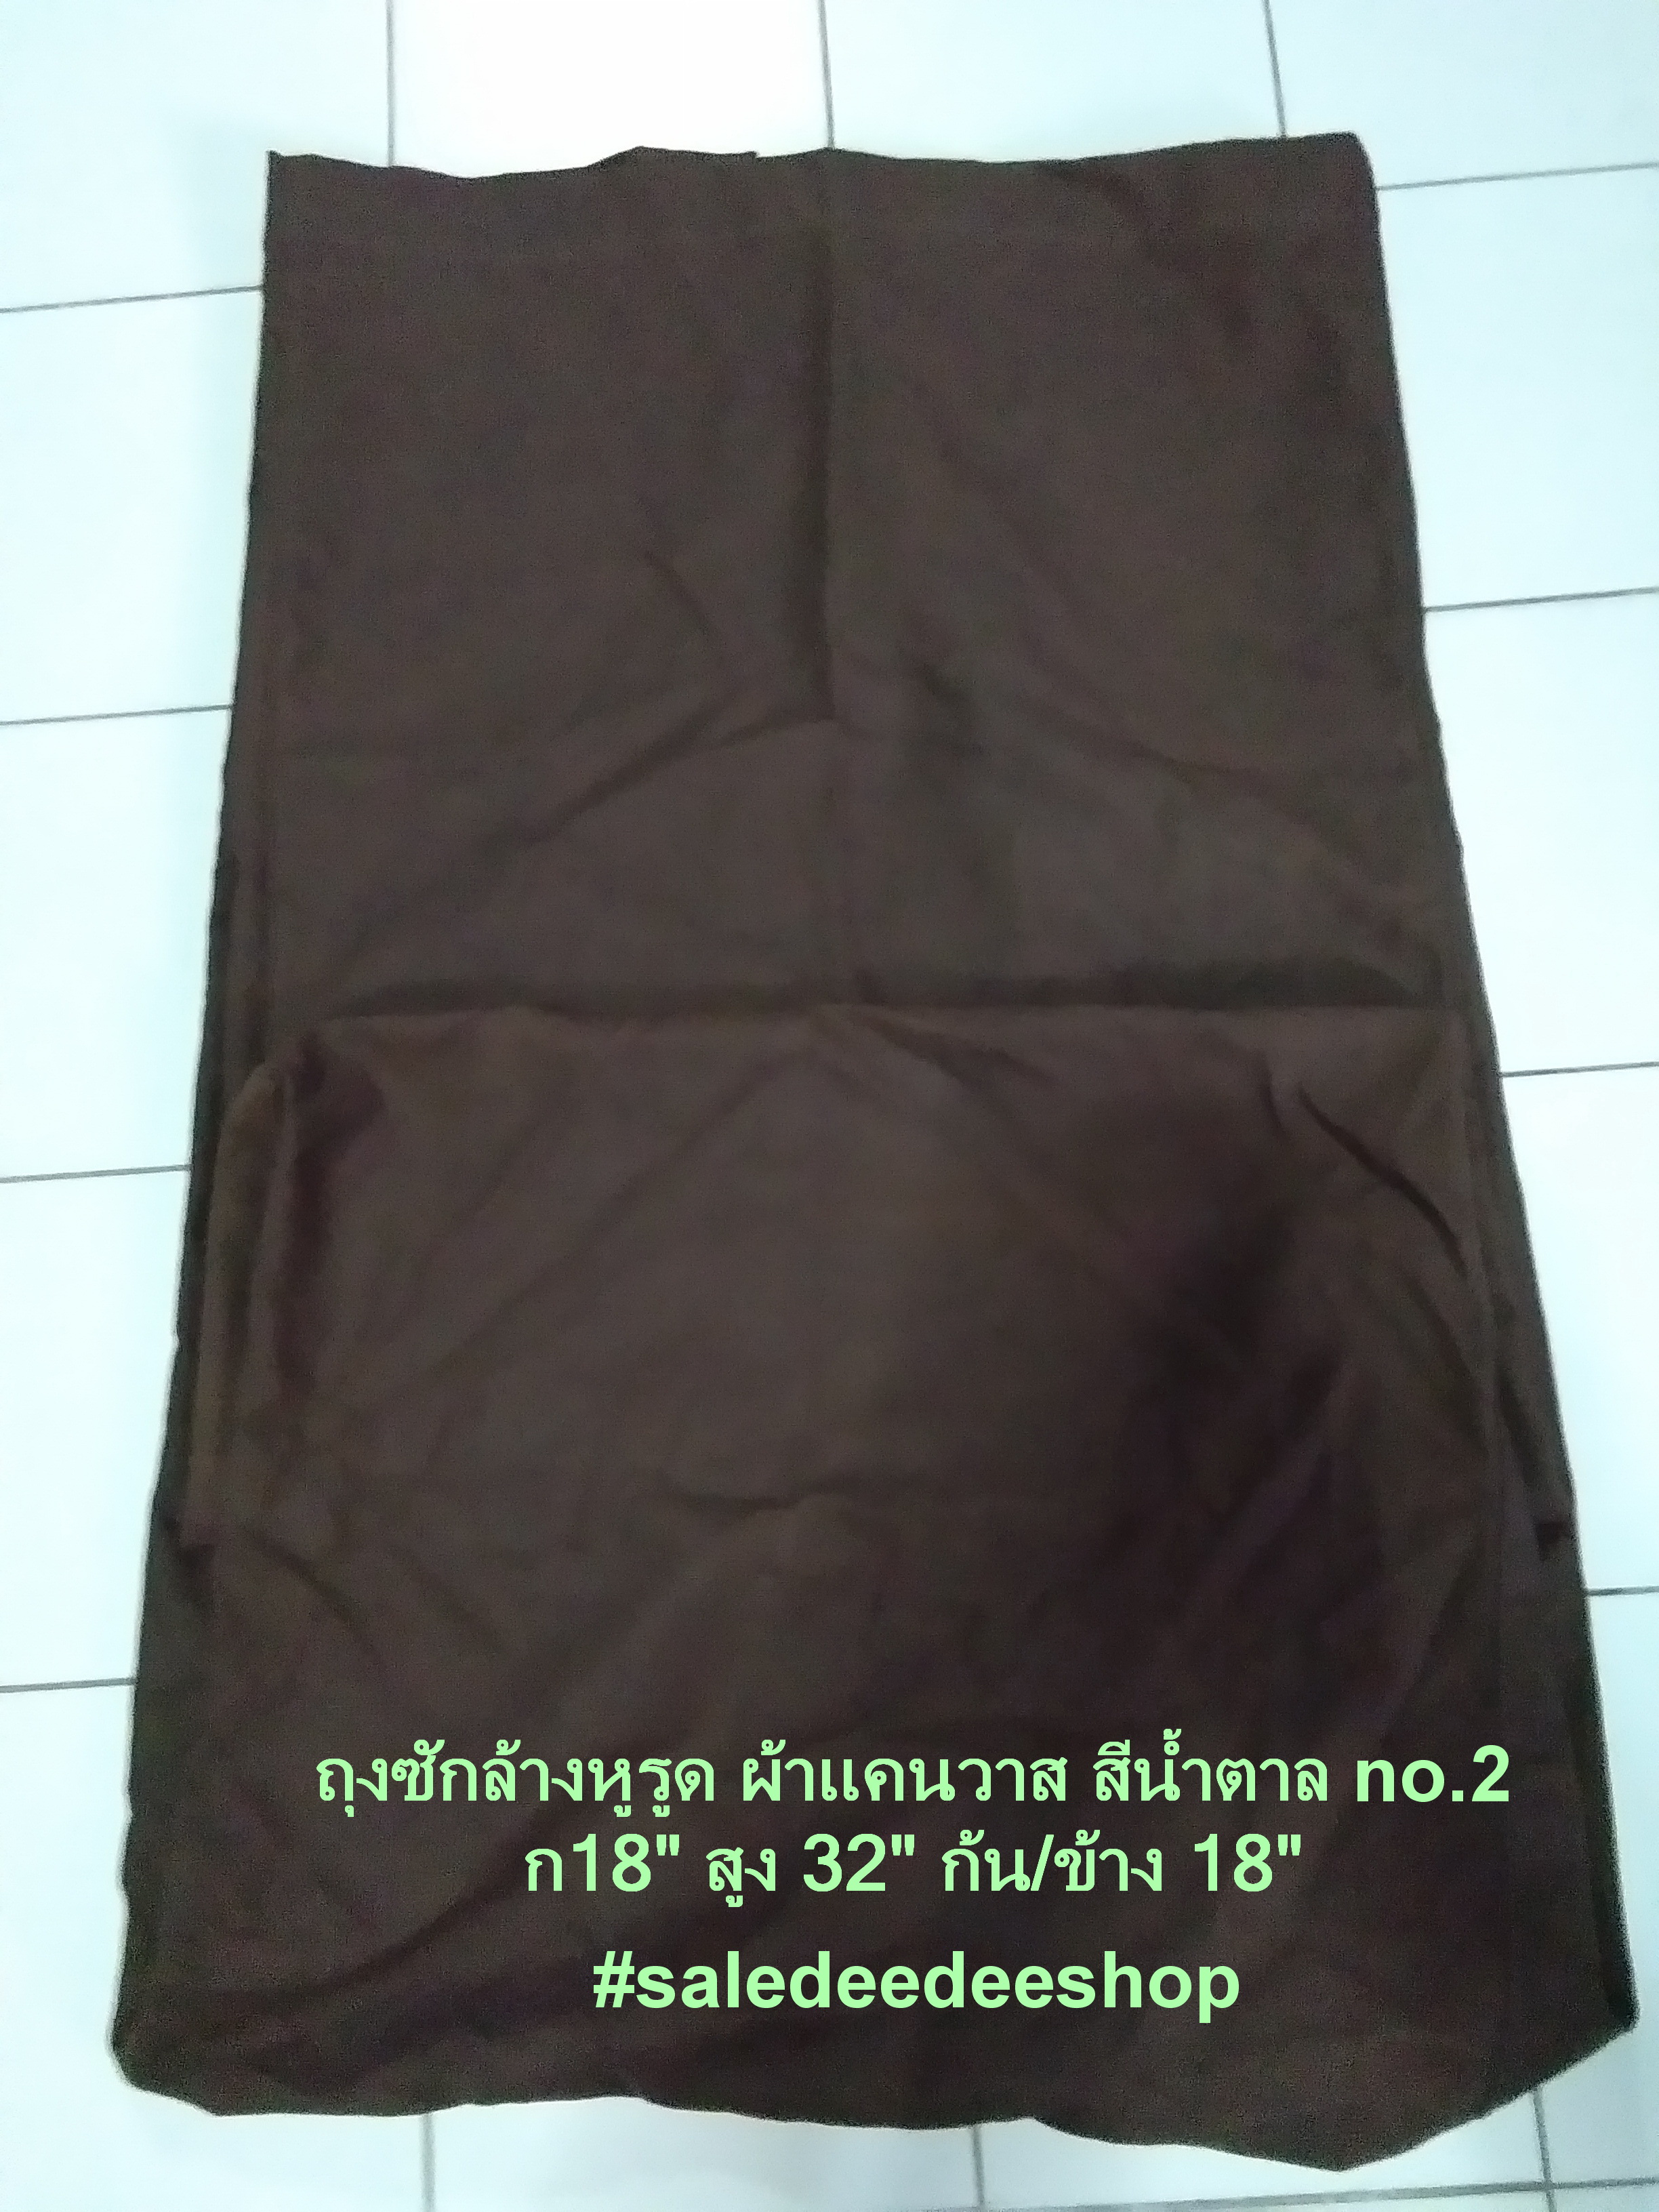 Laundry Soil Bag with Rope, ถุงซักล้างแบบหูรูด, ถุงผ้าแคนวาส, ถุงซักล้างสำหรับโรงแรม, เสื้อผ้าชุดสปา ชุดนวดแผนไทย,โบราณ massage เสื้อ กระโปรง กางเกงเล ผ้าขาวม้าชุดนวดไทย, ชุดนวดลูกค้า, ชุดลูกค้าสปา, ชุดคลีนิค, ยูนิฟอร์มสปา, ยูนิฟอร์มนวดไทย, ชุดนวดแผนไทย รูปที่ 1